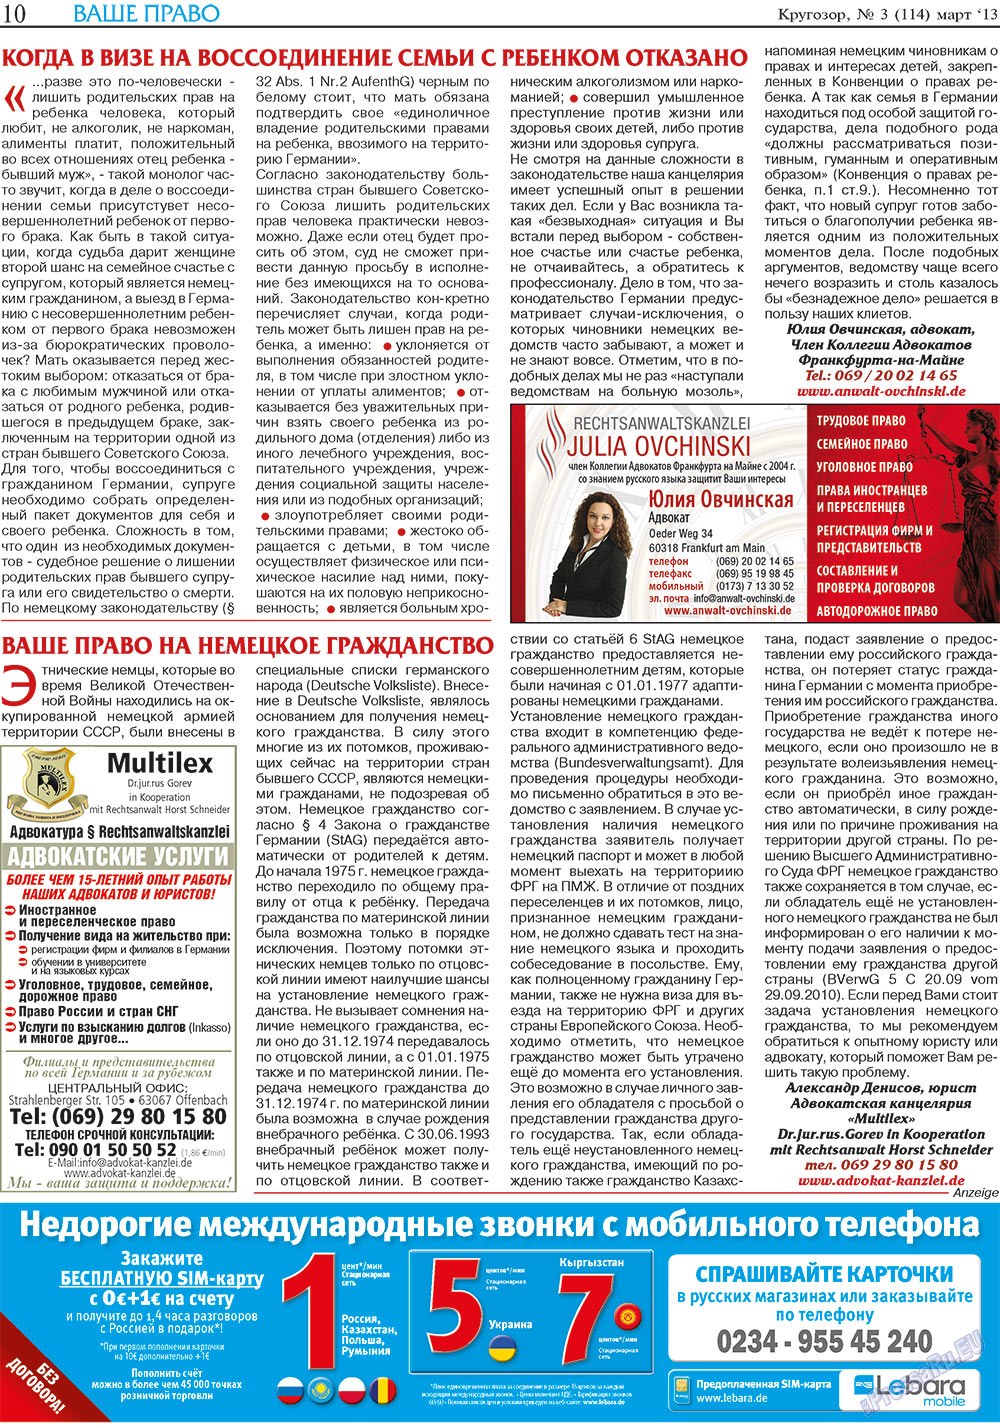 Кругозор, газета. 2013 №3 стр.10